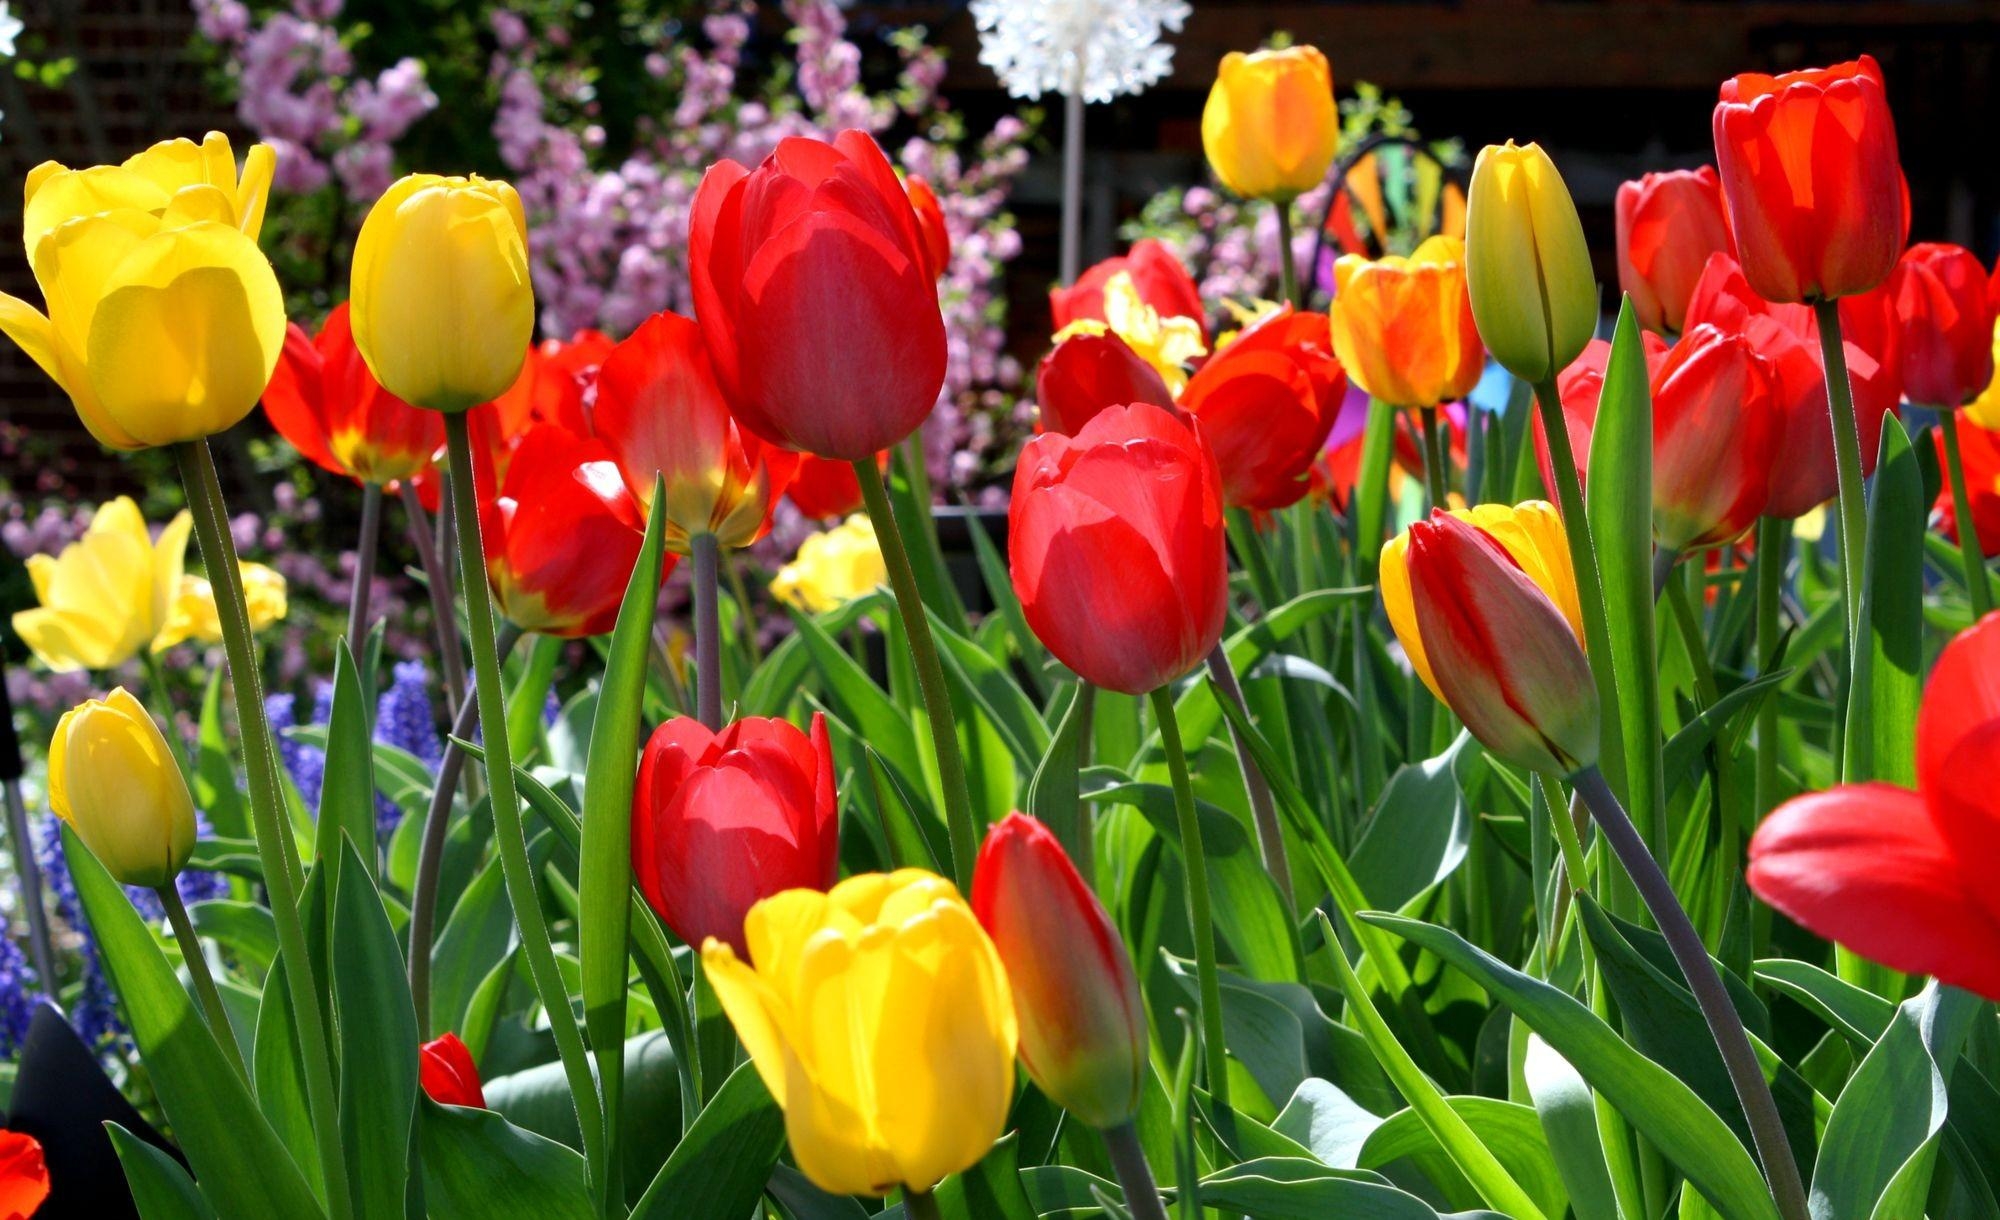 Скачать обои бесплатно Клумба, Весна, Солнечно, Цветы, Тюльпаны картинка на рабочий стол ПК